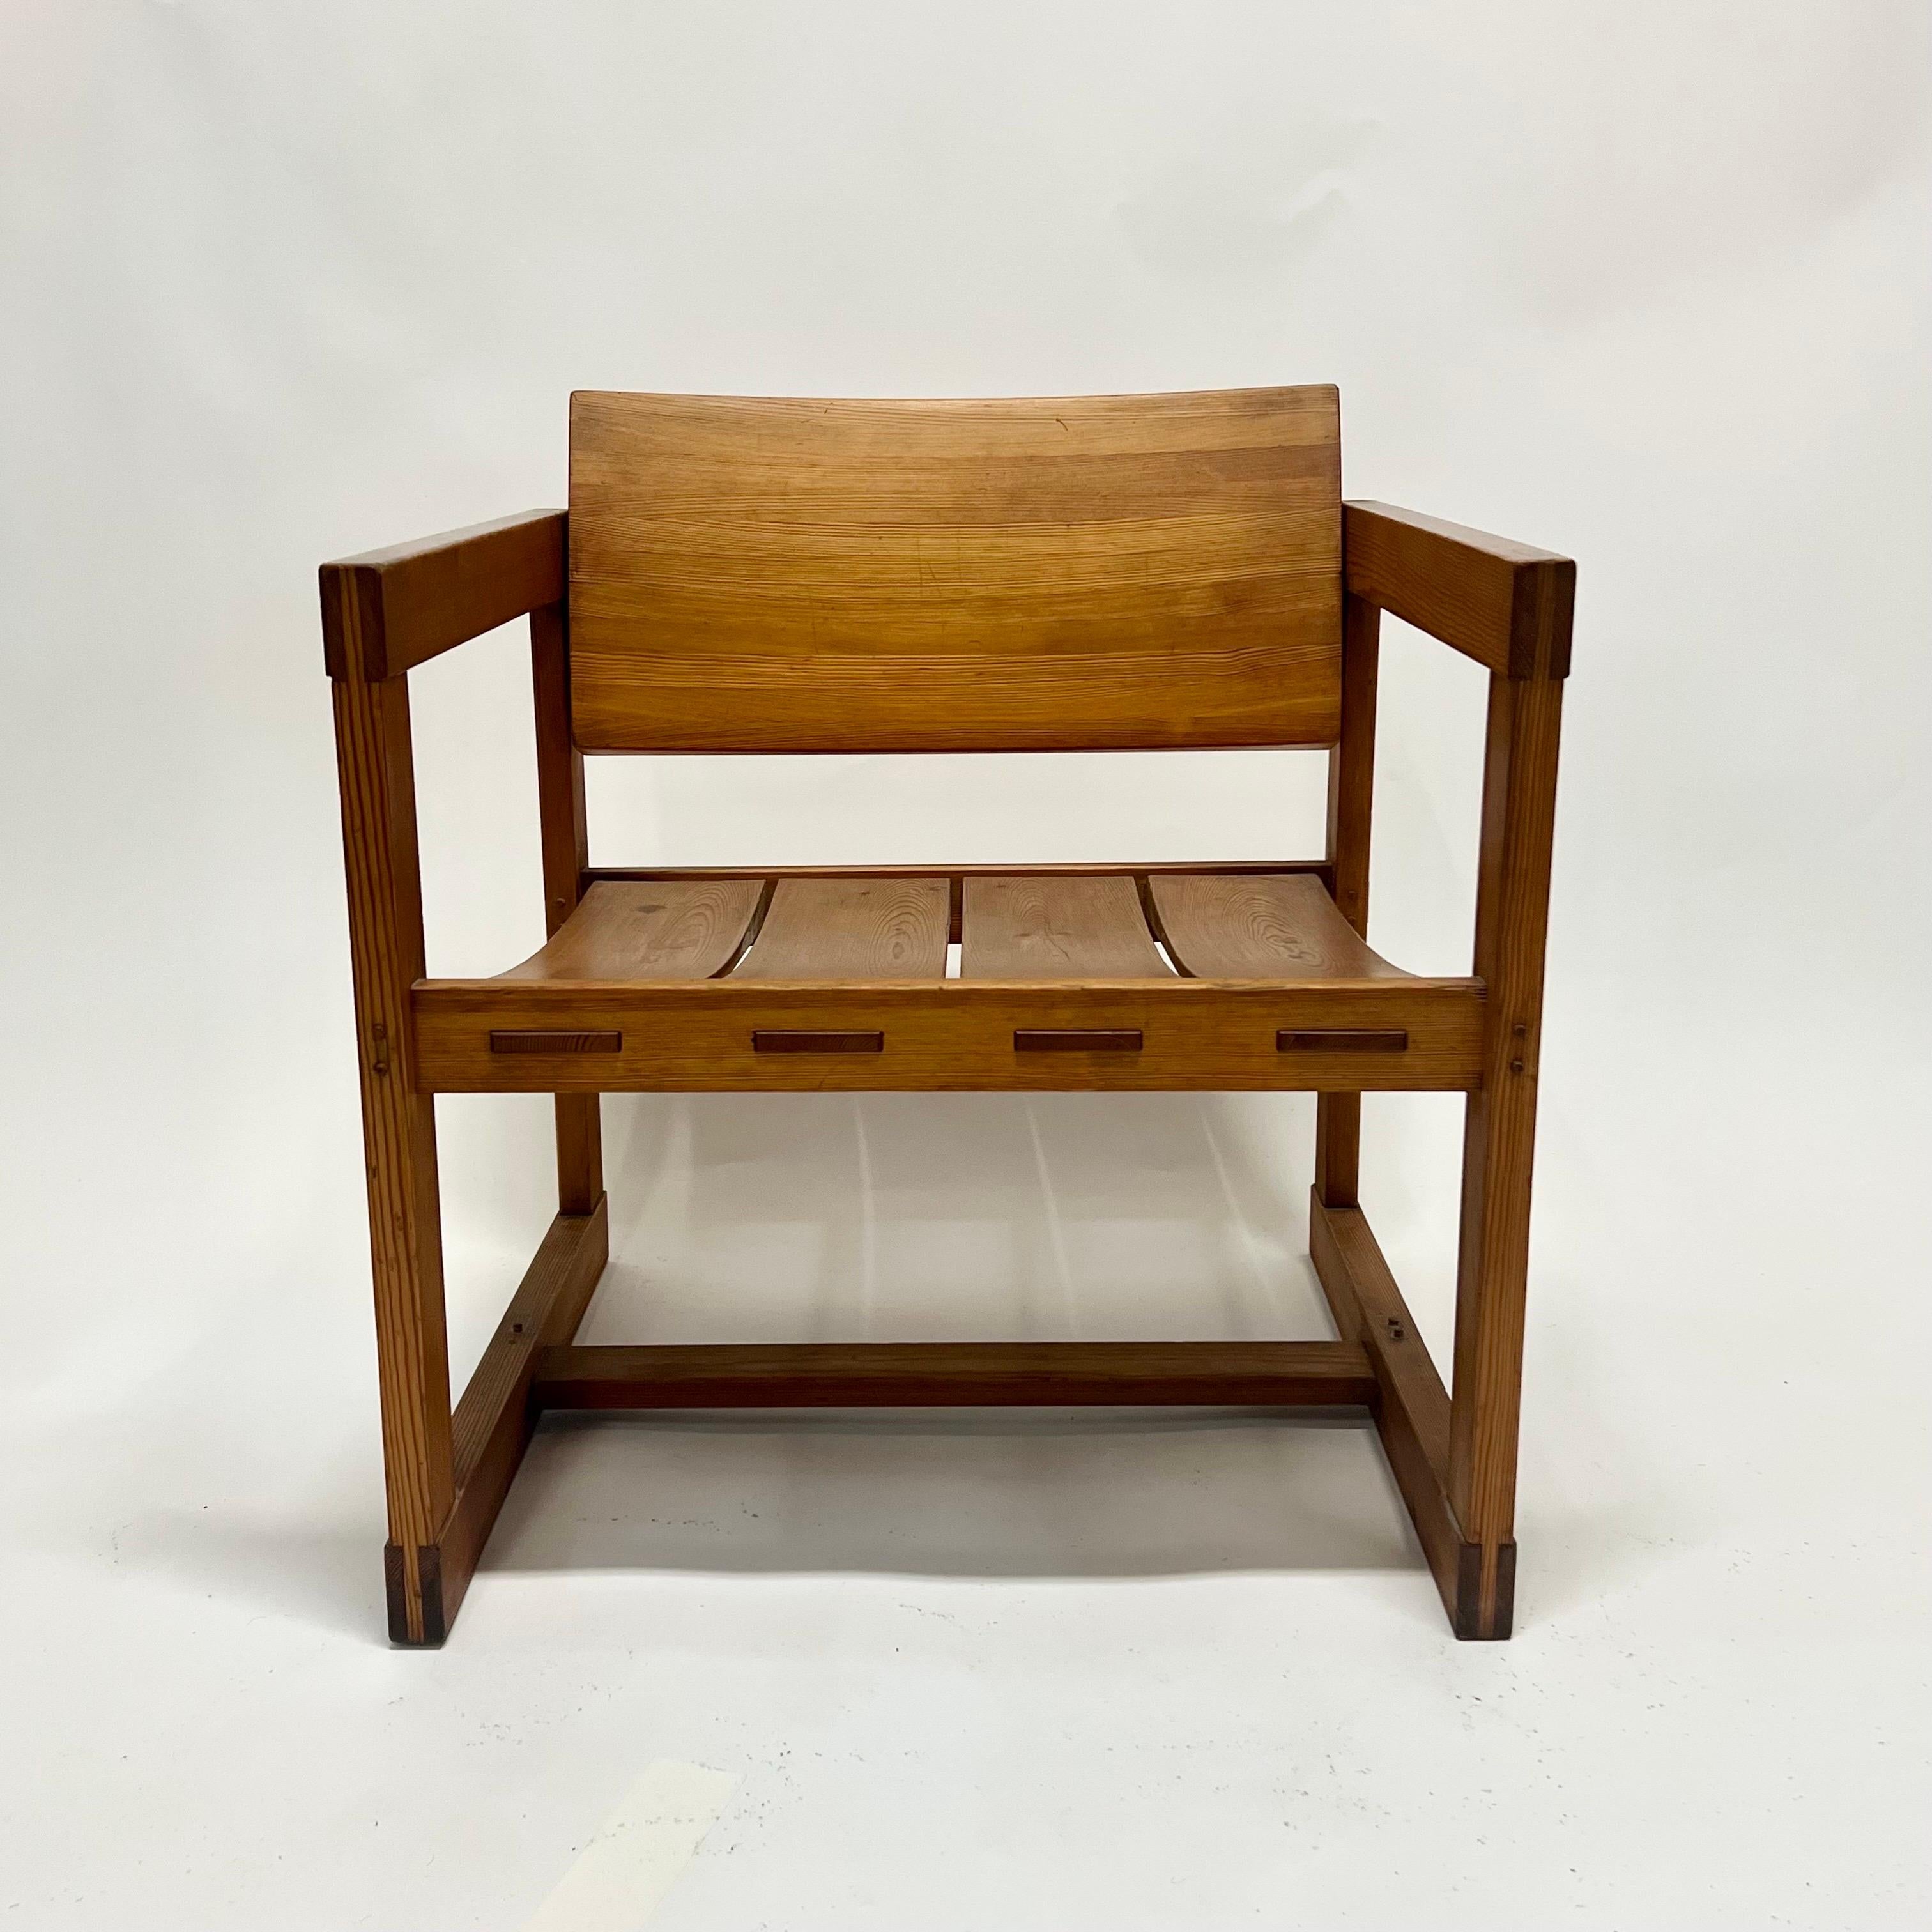 Fantastique chaise longue en bois conçue par Edvin Helseth vers les années 1960, Norvège. La chaise est fabriquée à partir d'une certaine espèce de pin qui est l'équivalent du sapin Douglas ancien des États-Unis. Cette chaise n'a pas de